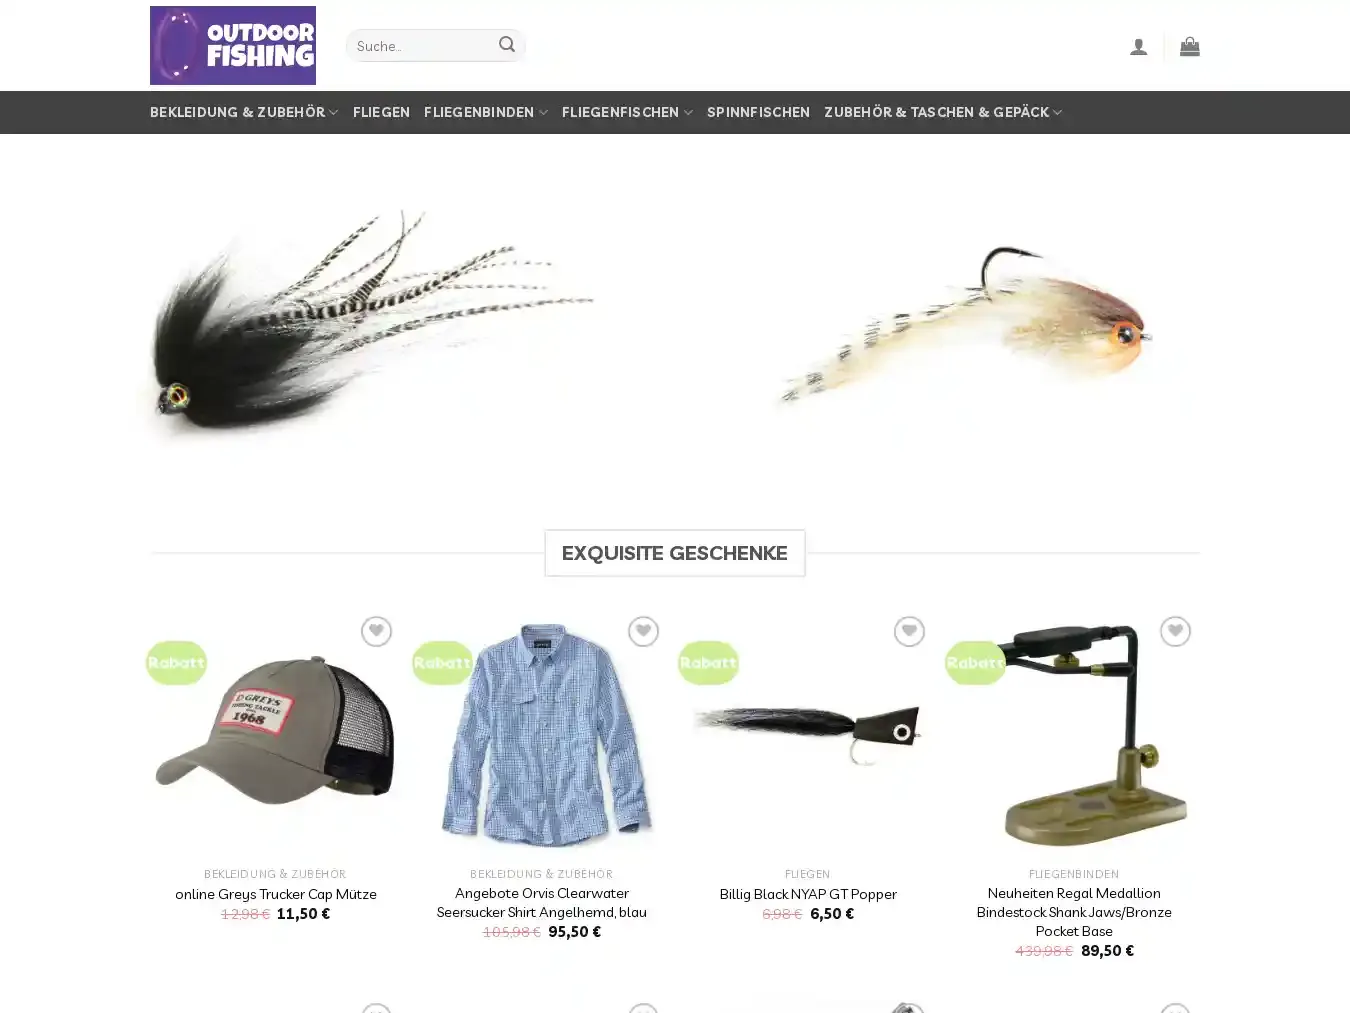 Angelfischen.com Fraudulent Fashion website.